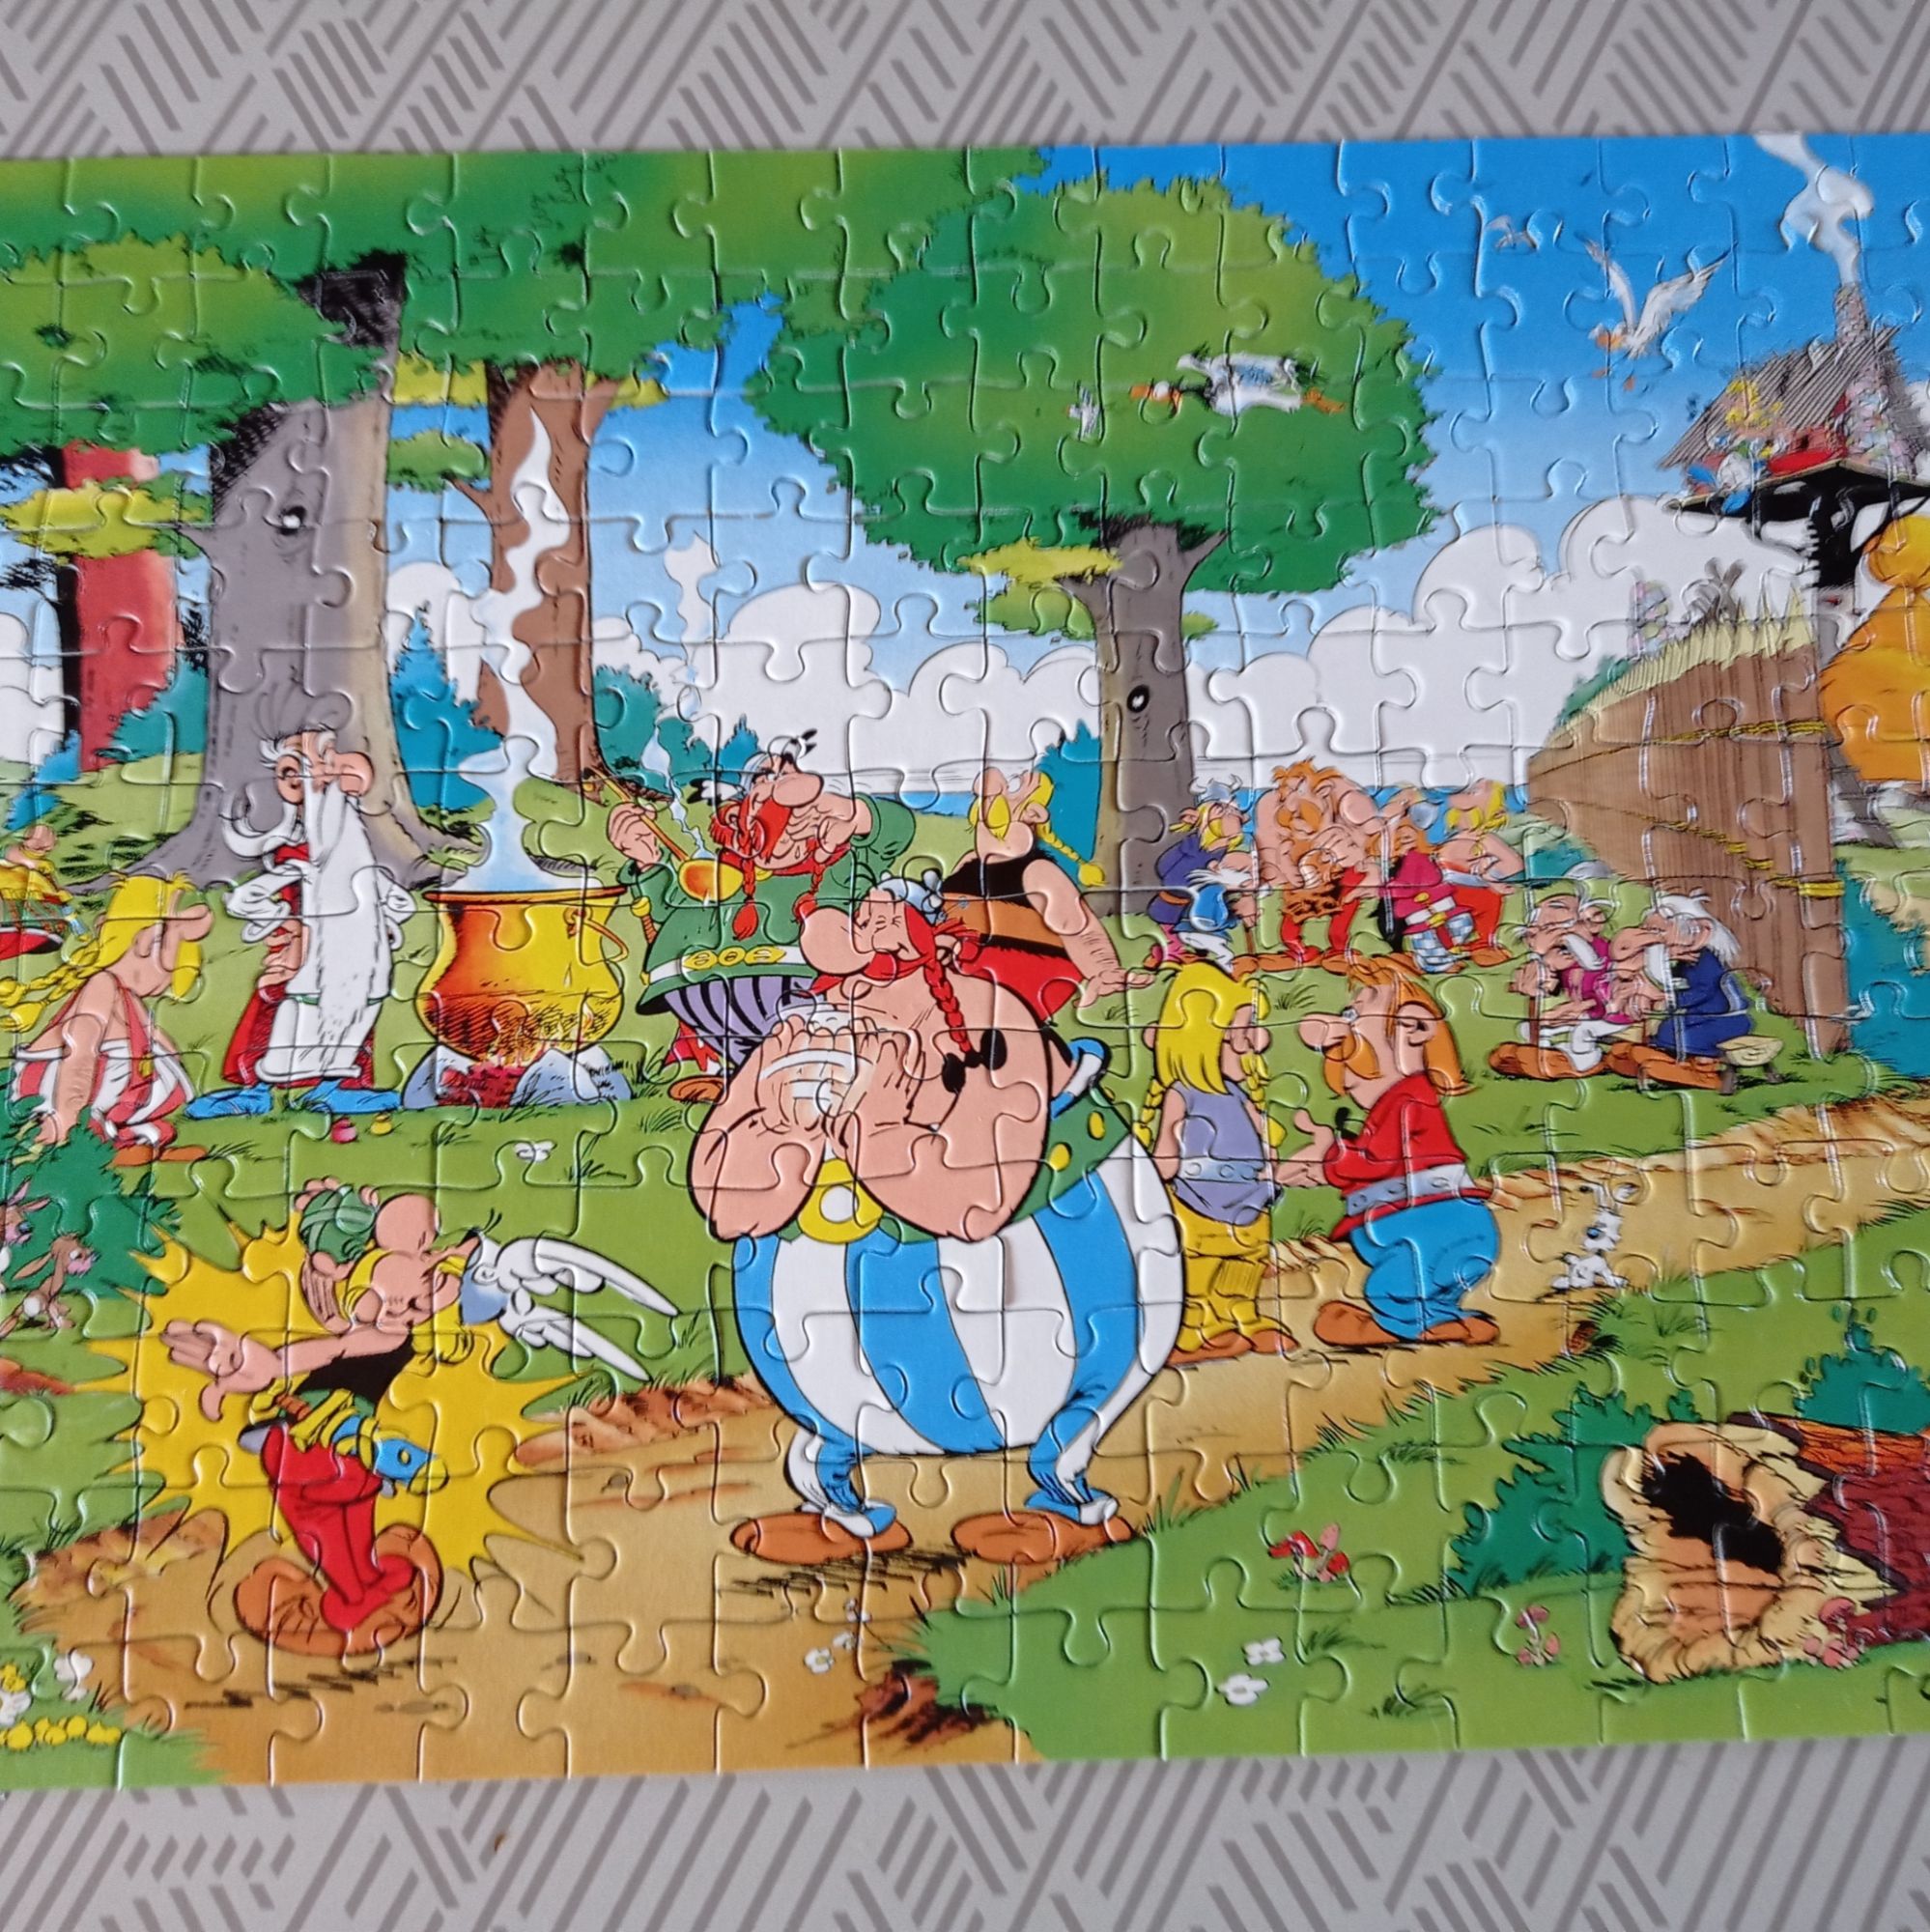 PUZZLE Asterix 200 pièces - puzzle